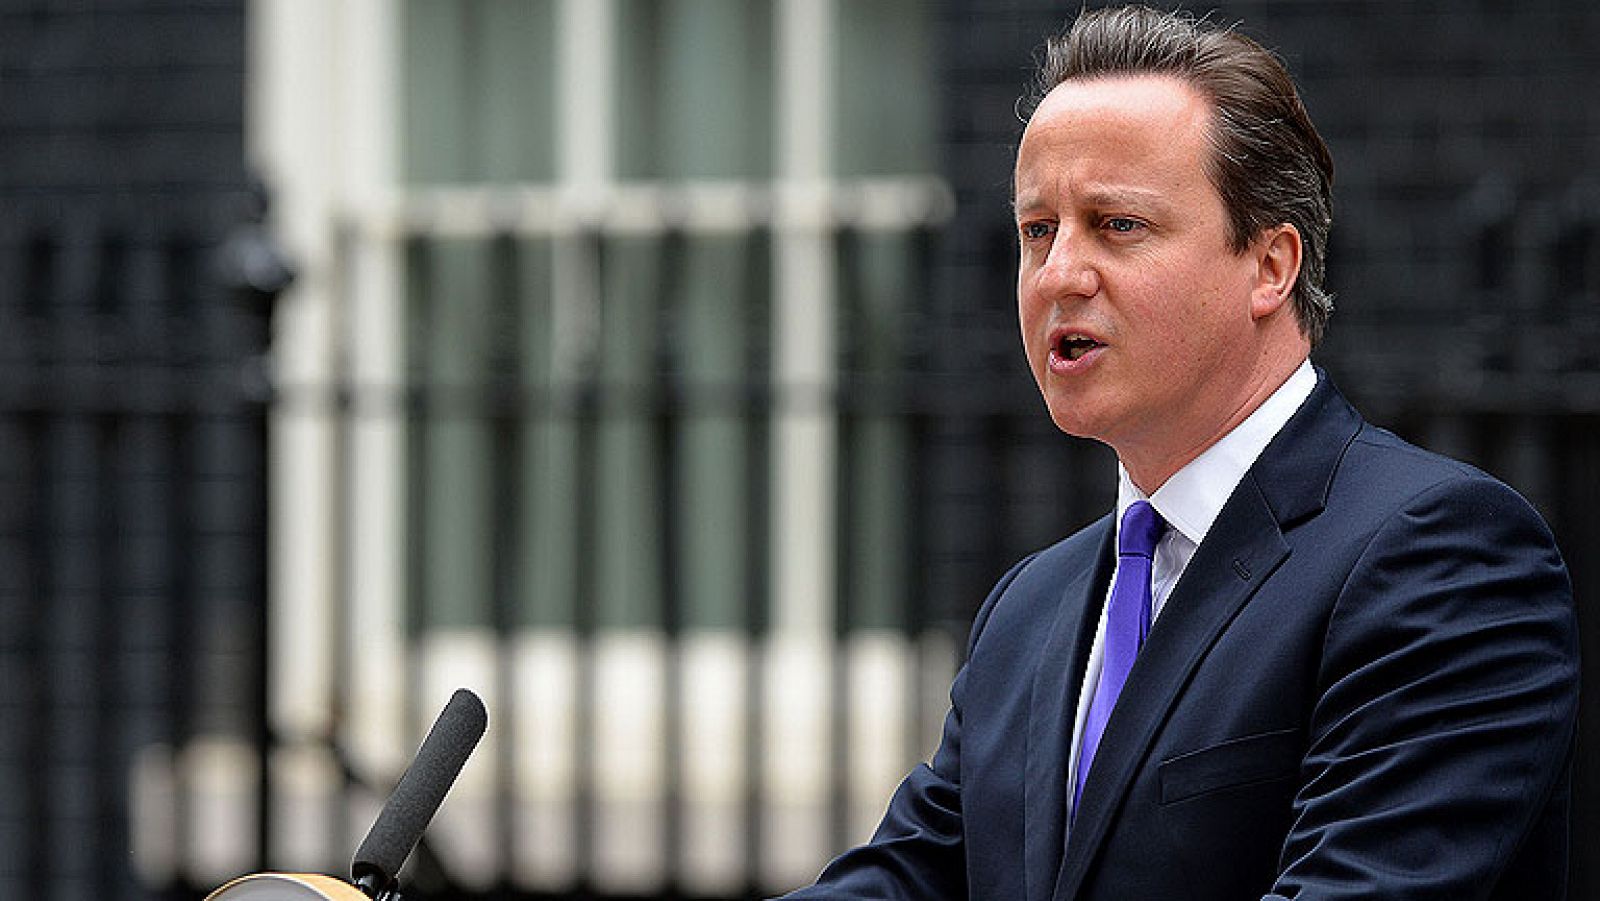  El primer ministro británico, David Cameron, ha dicho este jueves que el país se mantendría firme en su oposición al terrorismo y que asesinato de a un soldado en el sur de Londres este miércoles es también una traición al Islam.